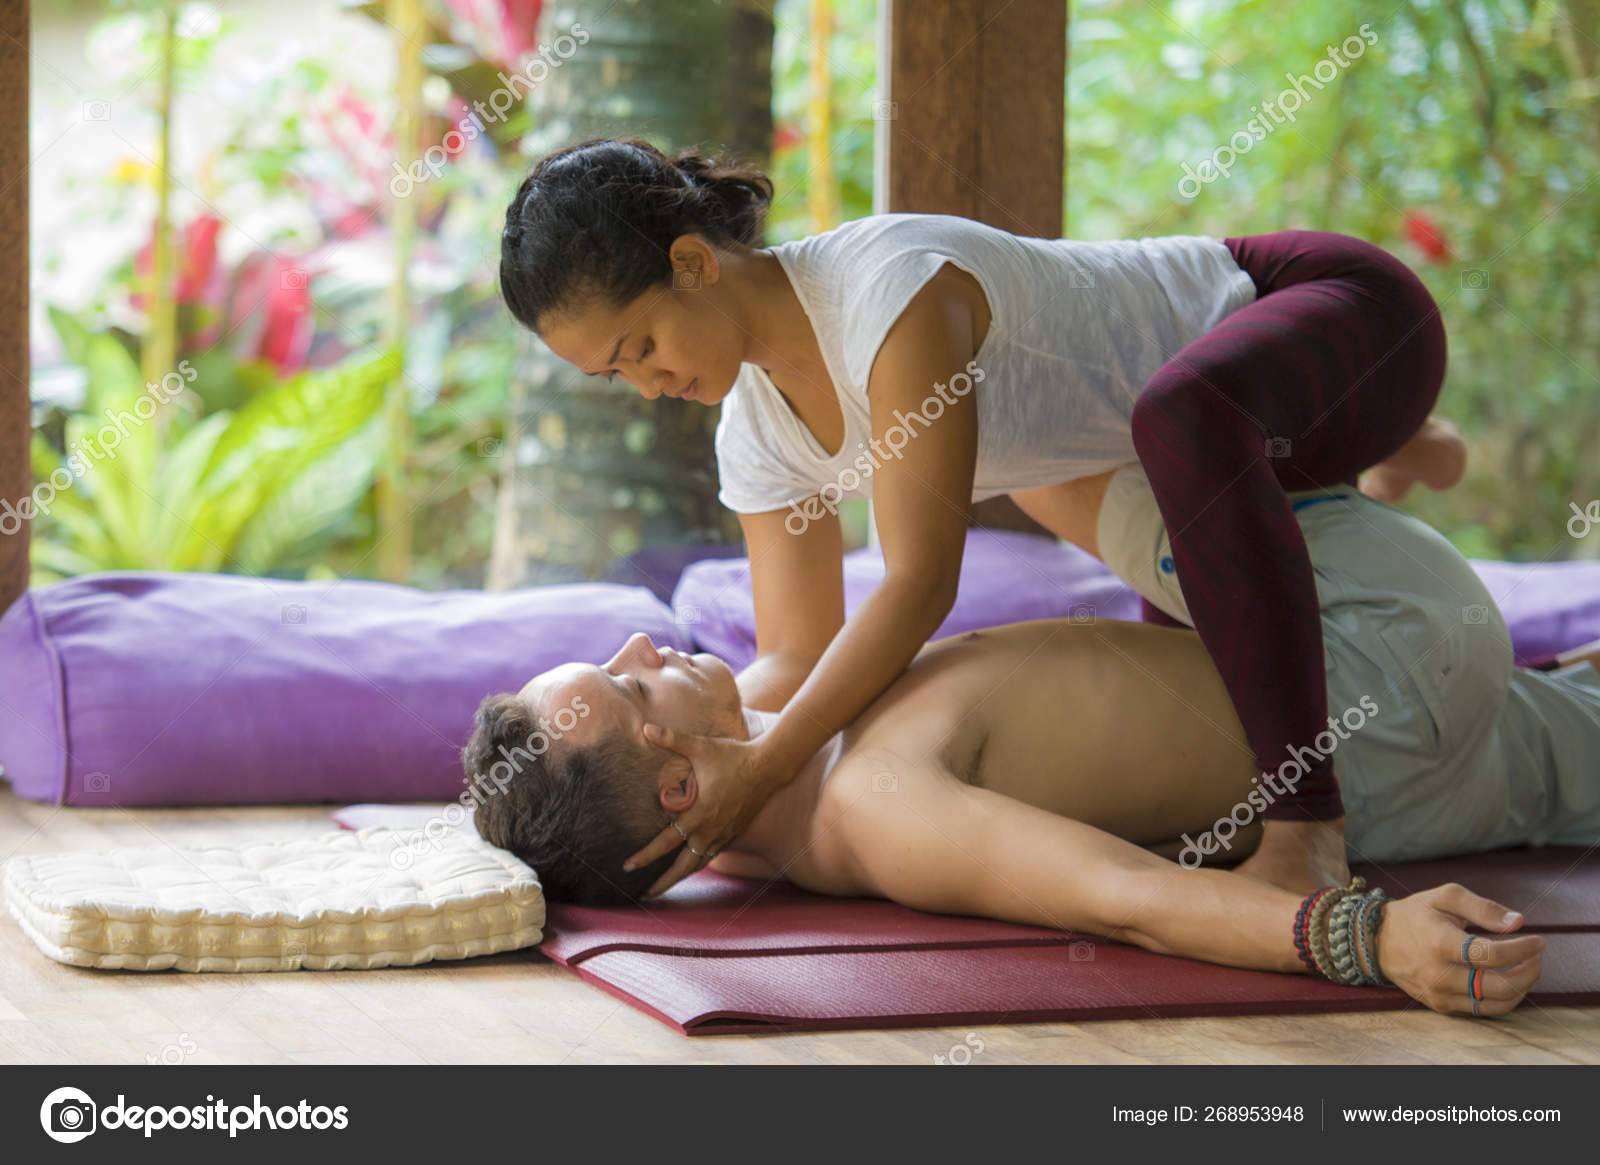 транс делает тайский массаж мужчине фото 80